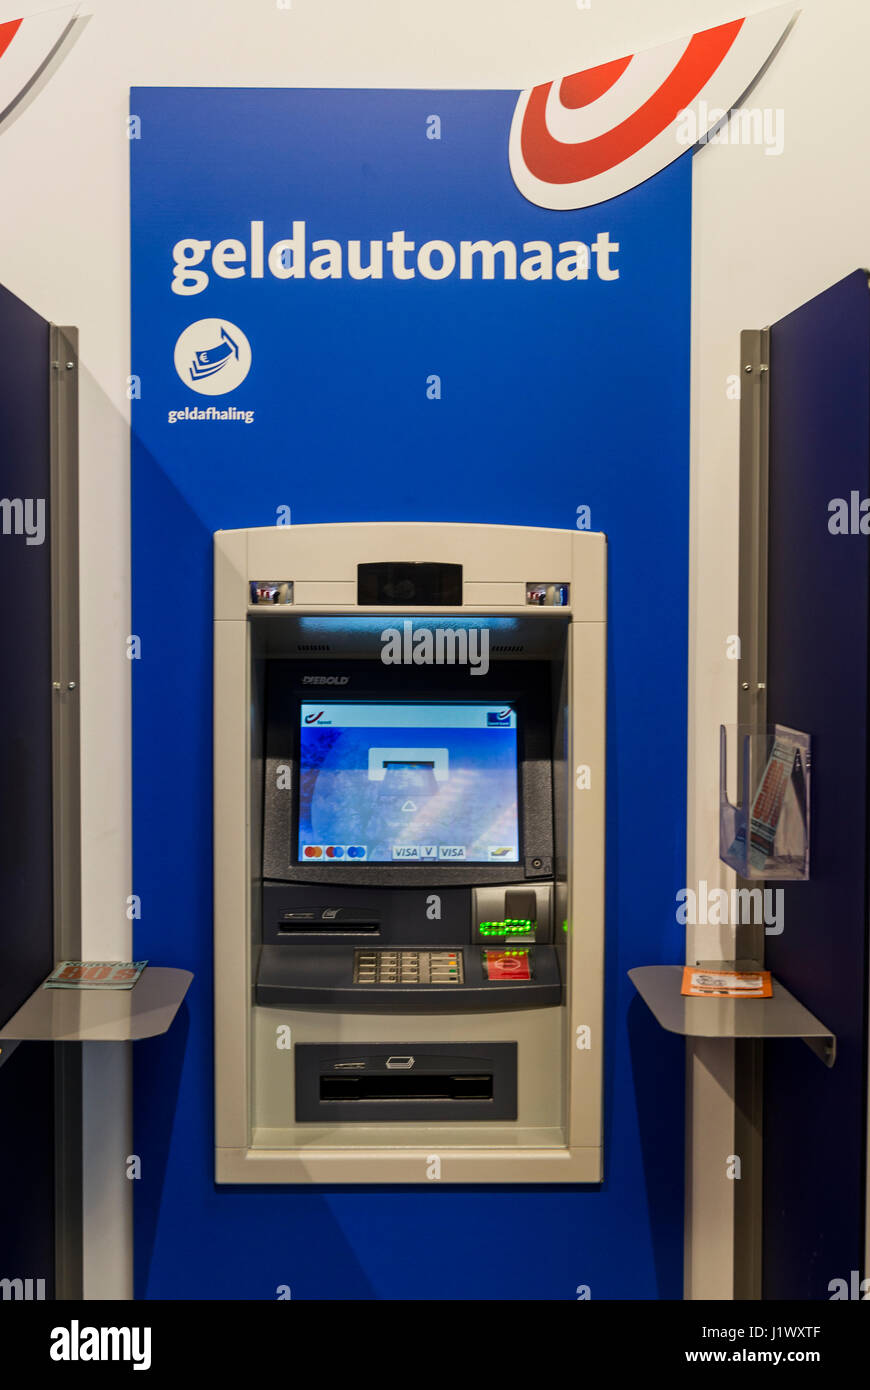 Geldautomaat Banque de photographies et d'images à haute résolution - Alamy